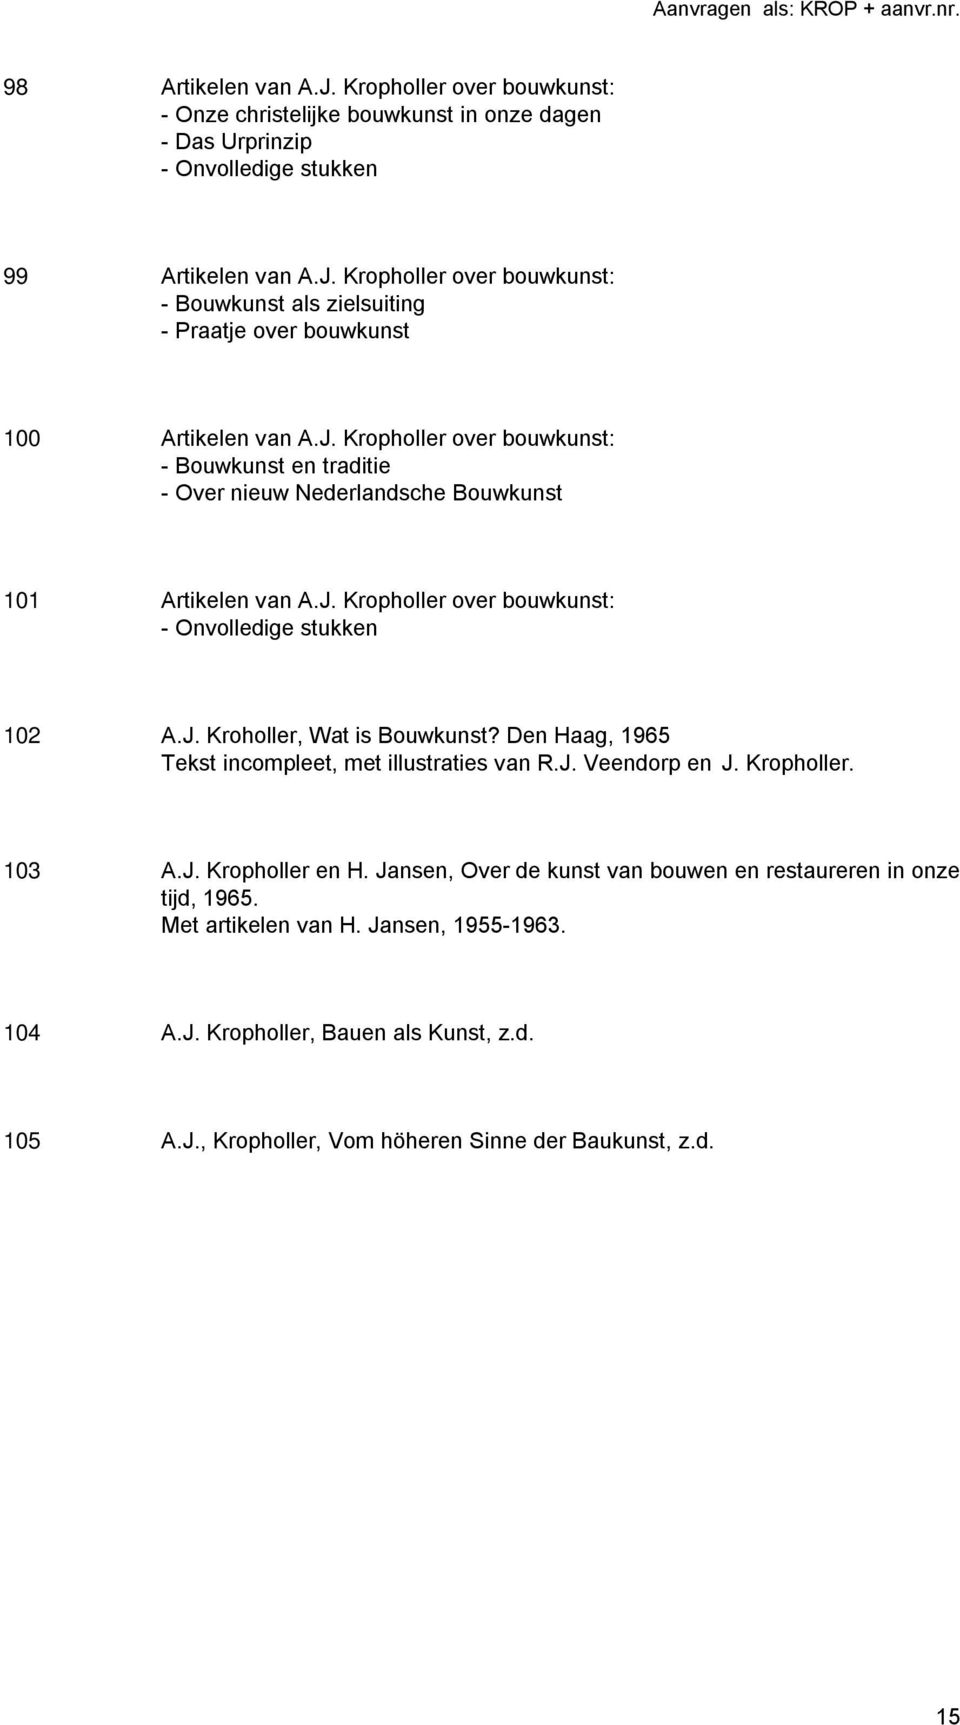 Den Haag, 1965 Tekst incompleet, met illustraties van R.J. Veendorp en J. Kropholler. 103 A.J. Kropholler en H. Jansen, Over de kunst van bouwen en restaureren in onze tijd, 1965.